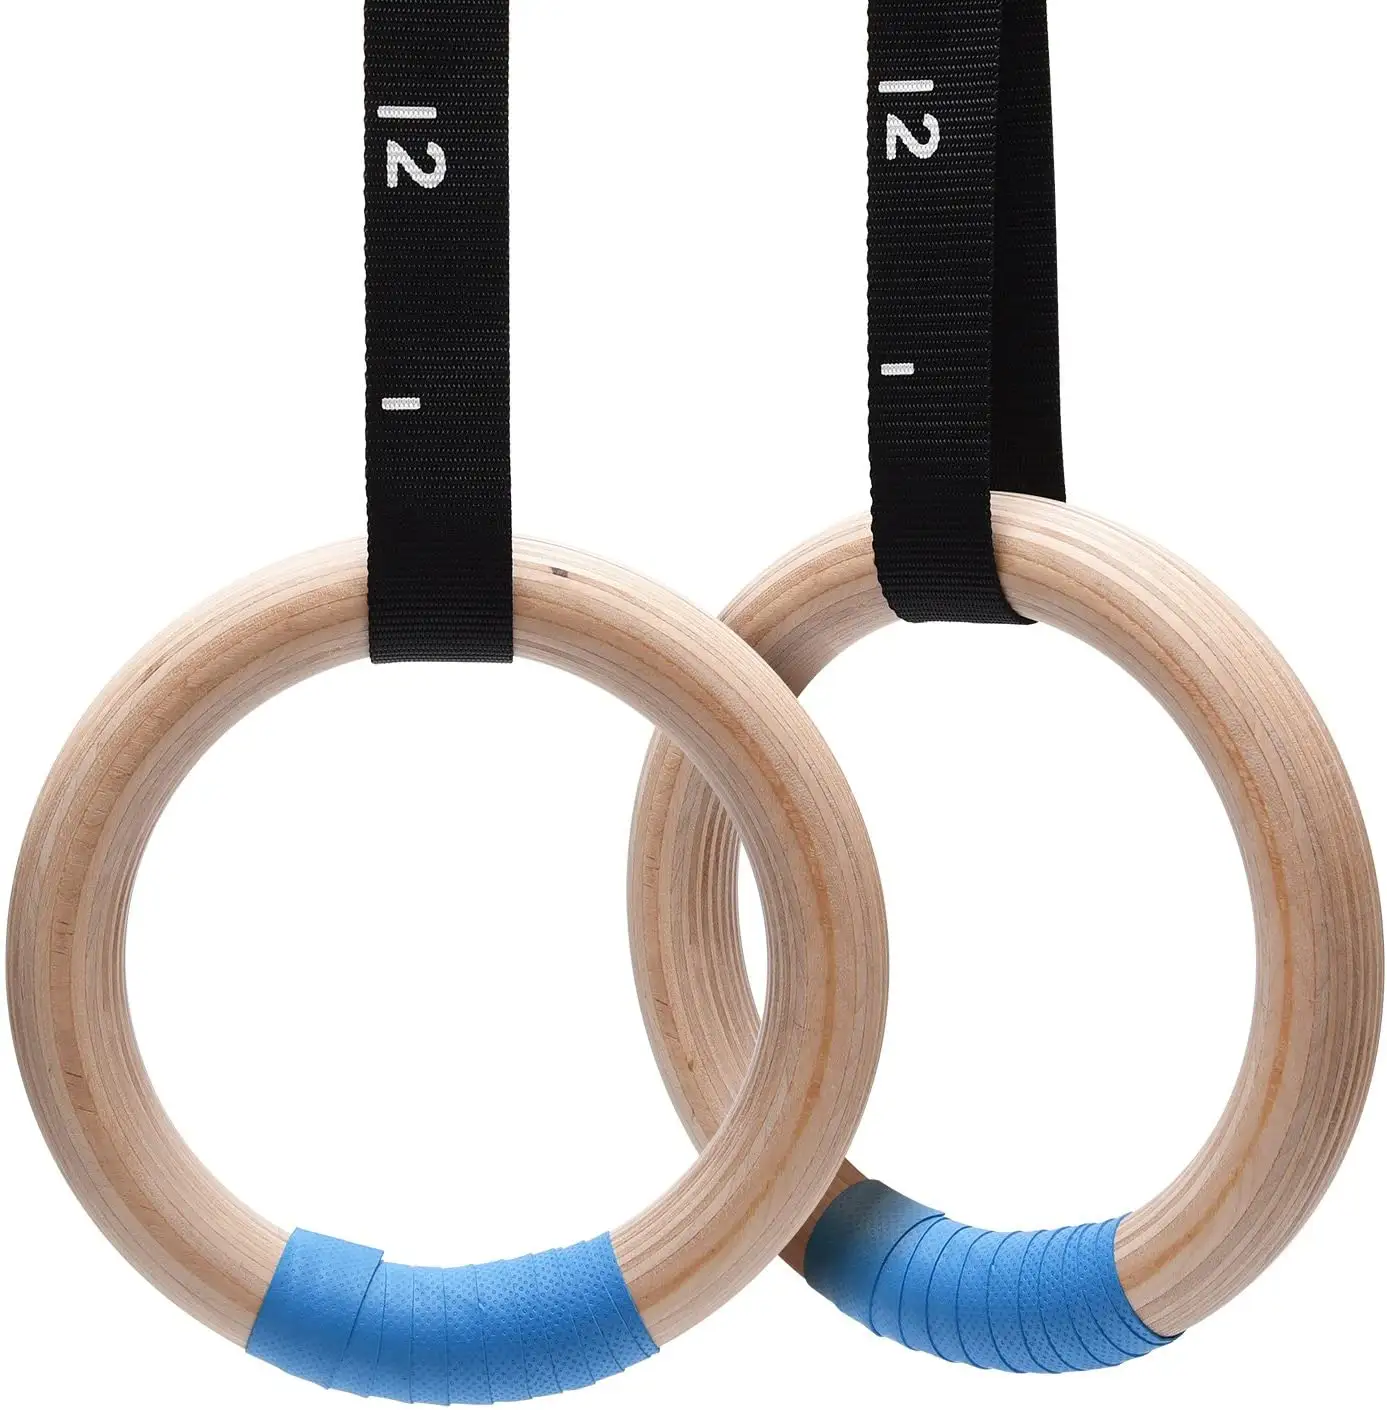 Holz gymnastik ringe mit verstellbarer Nocken schnalle Lange Träger Übungs ringe Rutsch feste Trainings ringe für das Heim-Fitness studio